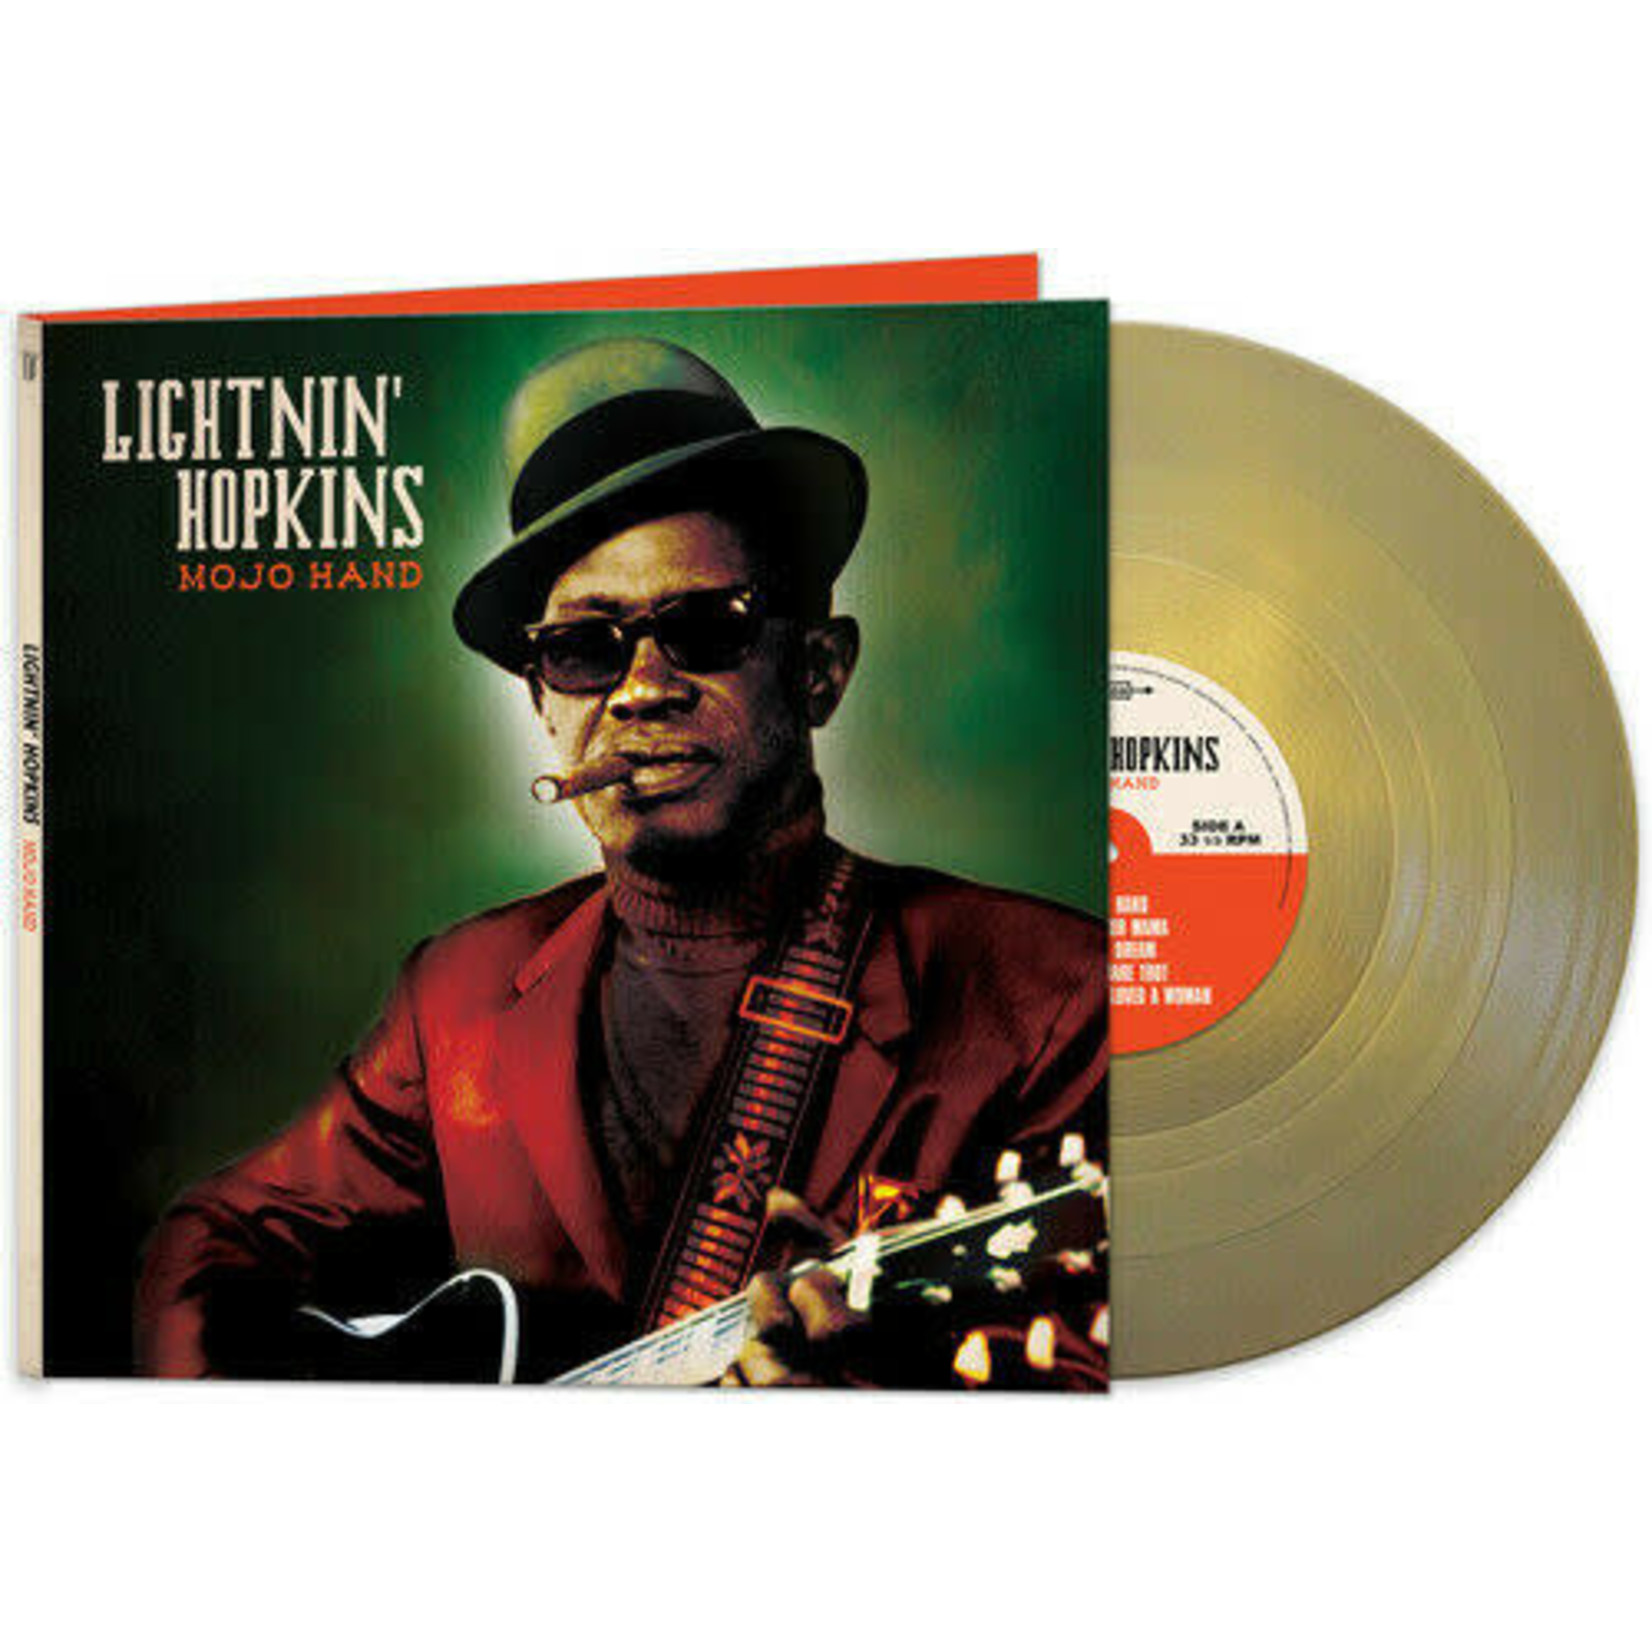 [New] Lightnin' Hopkins - Mojo Hand (gold vinyl)